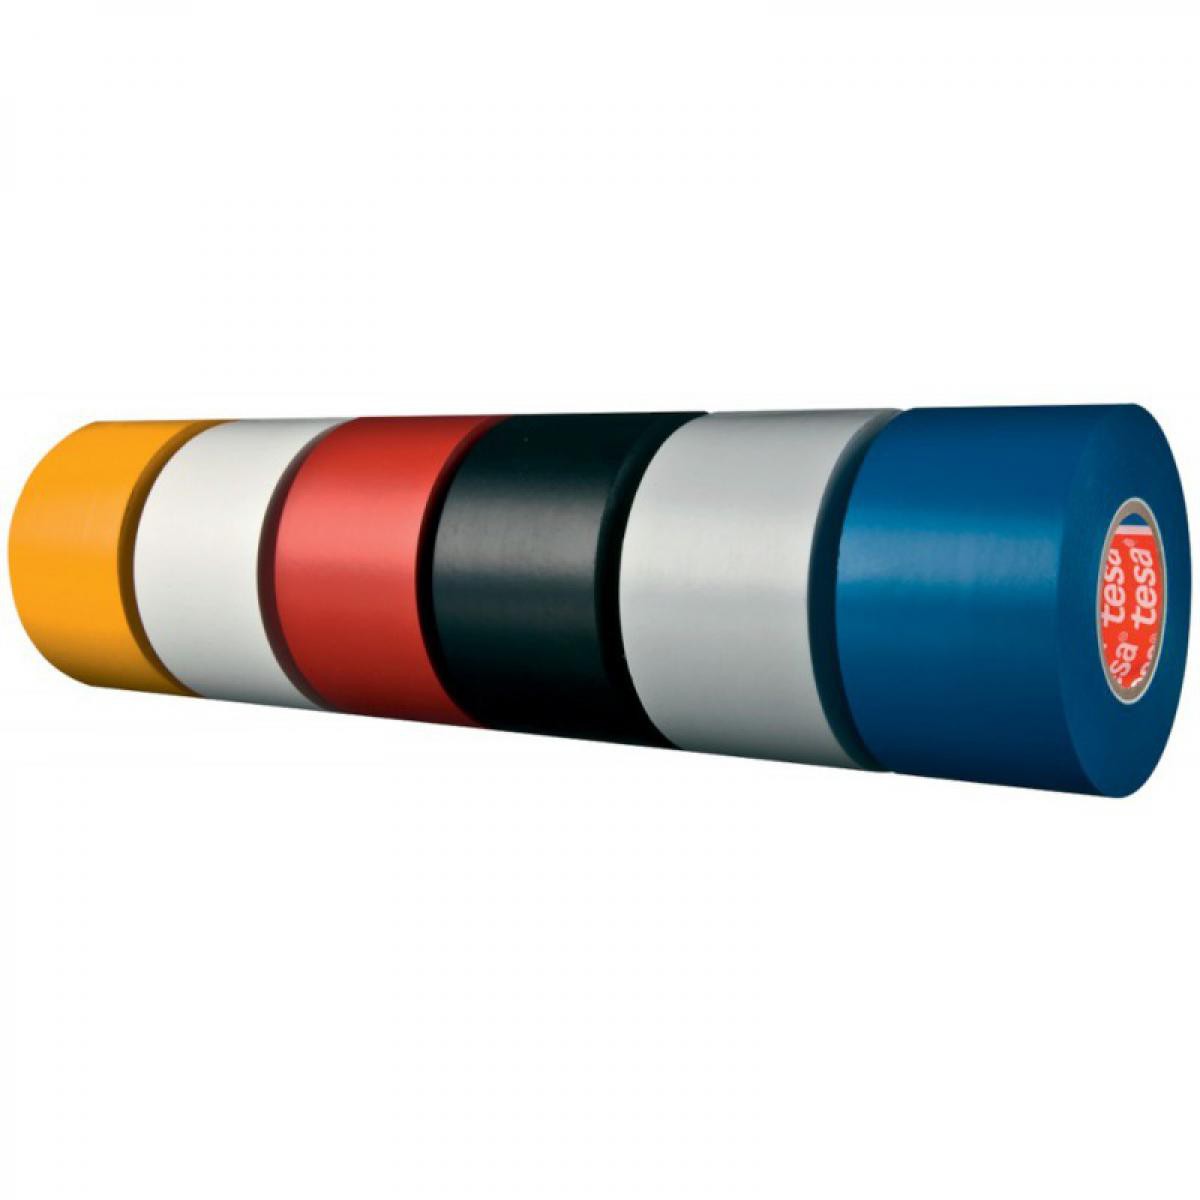 Tesa - Ruban adhésif isolant électrique - 4163 - largeur 25mm tesa (Par 6) - Colle & adhésif